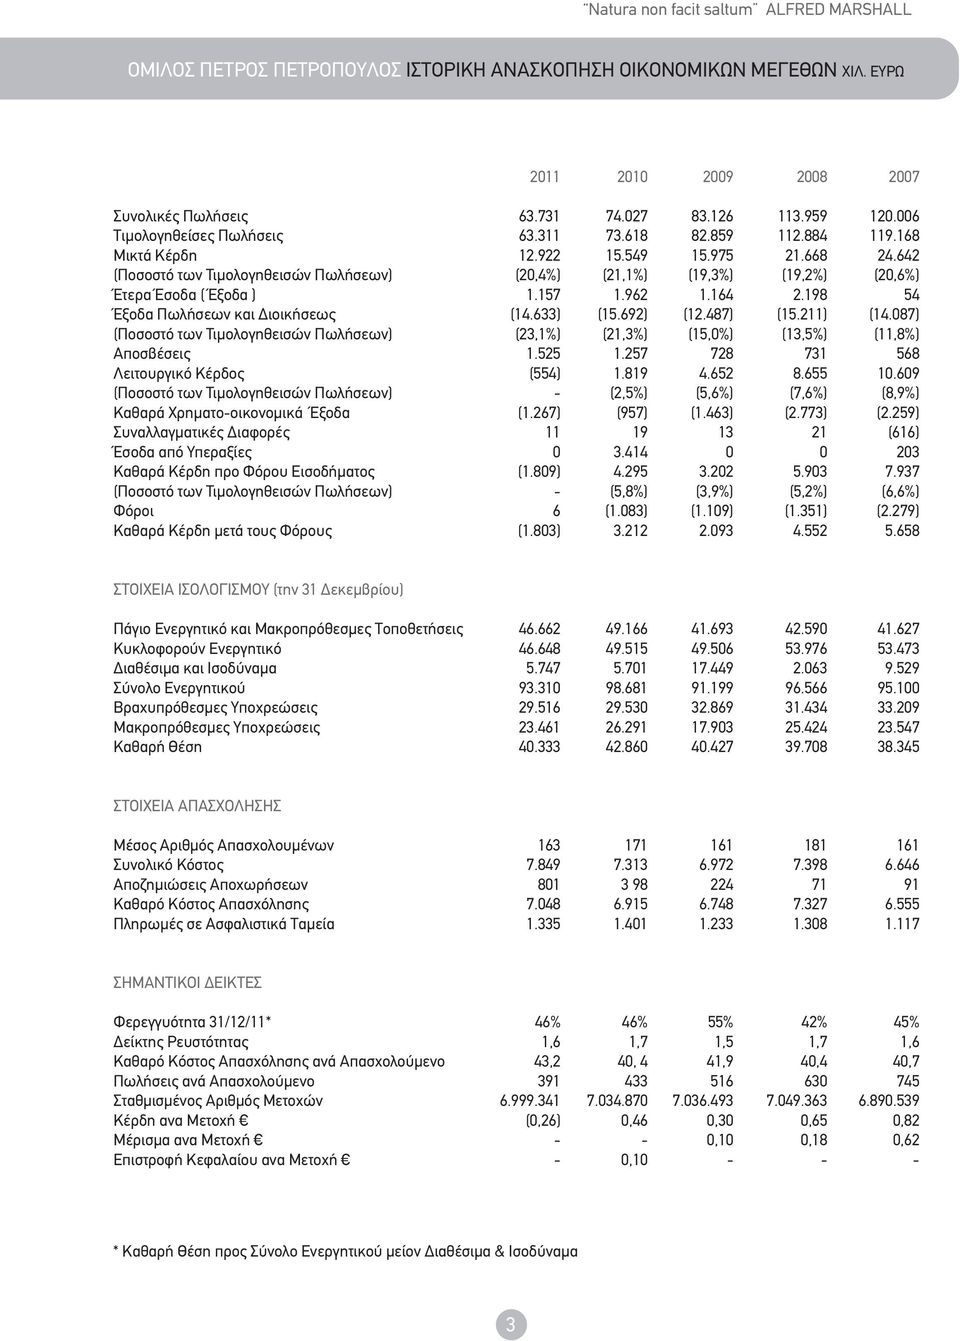 Τιμολογηθεισών Πωλήσεων) Aποσβέσεις Λειτουργικό Kέρδος (Ποσοστό των Τιμολογηθεισών Πωλήσεων) Kαθαρά Xρηματοοικονομικά Έξοδα Συναλλαγματικές Διαφορές Έσοδα από Υπεραξίες Kαθαρά Kέρδη προ Φόρου